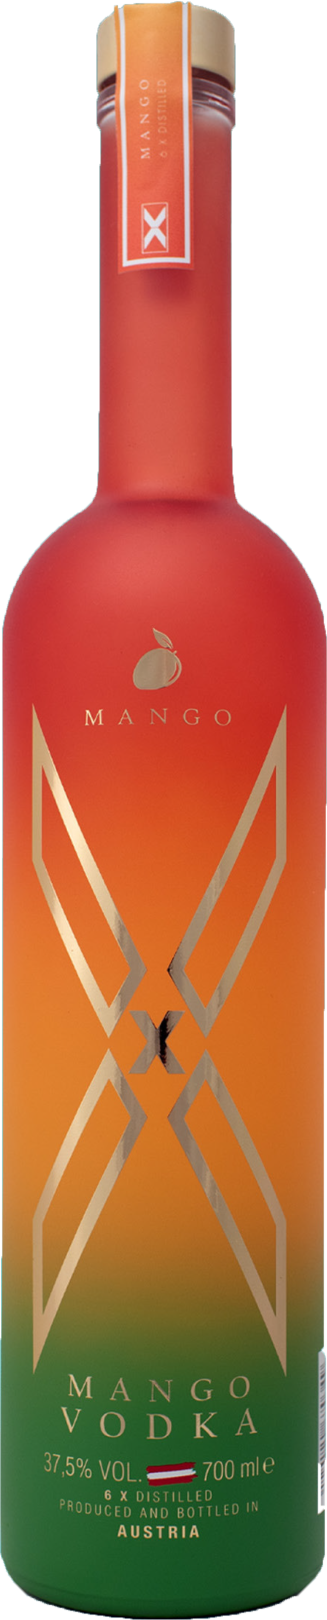 X-Vodka Mango